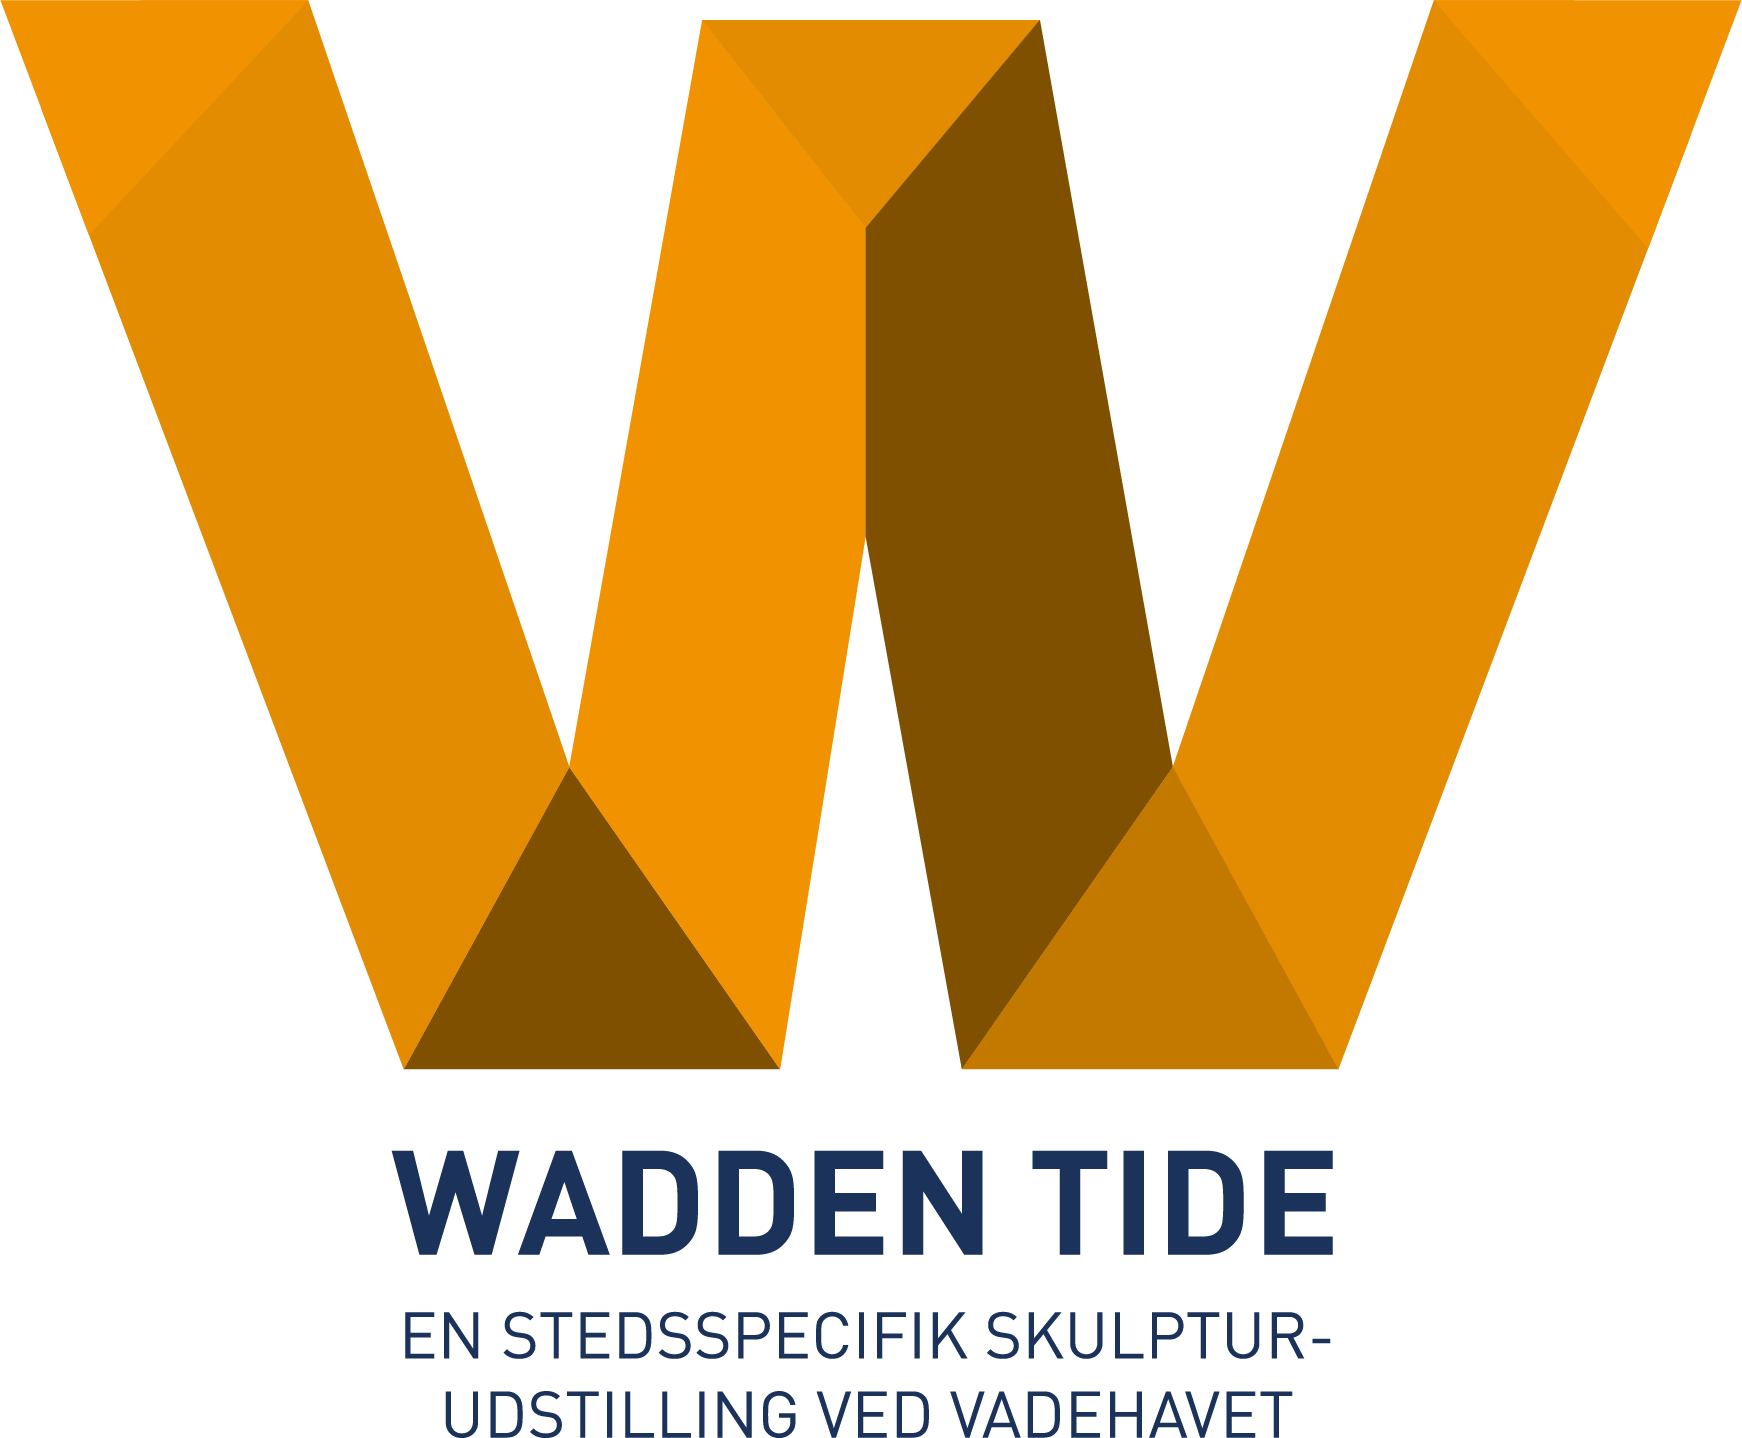 Wassen tide logo